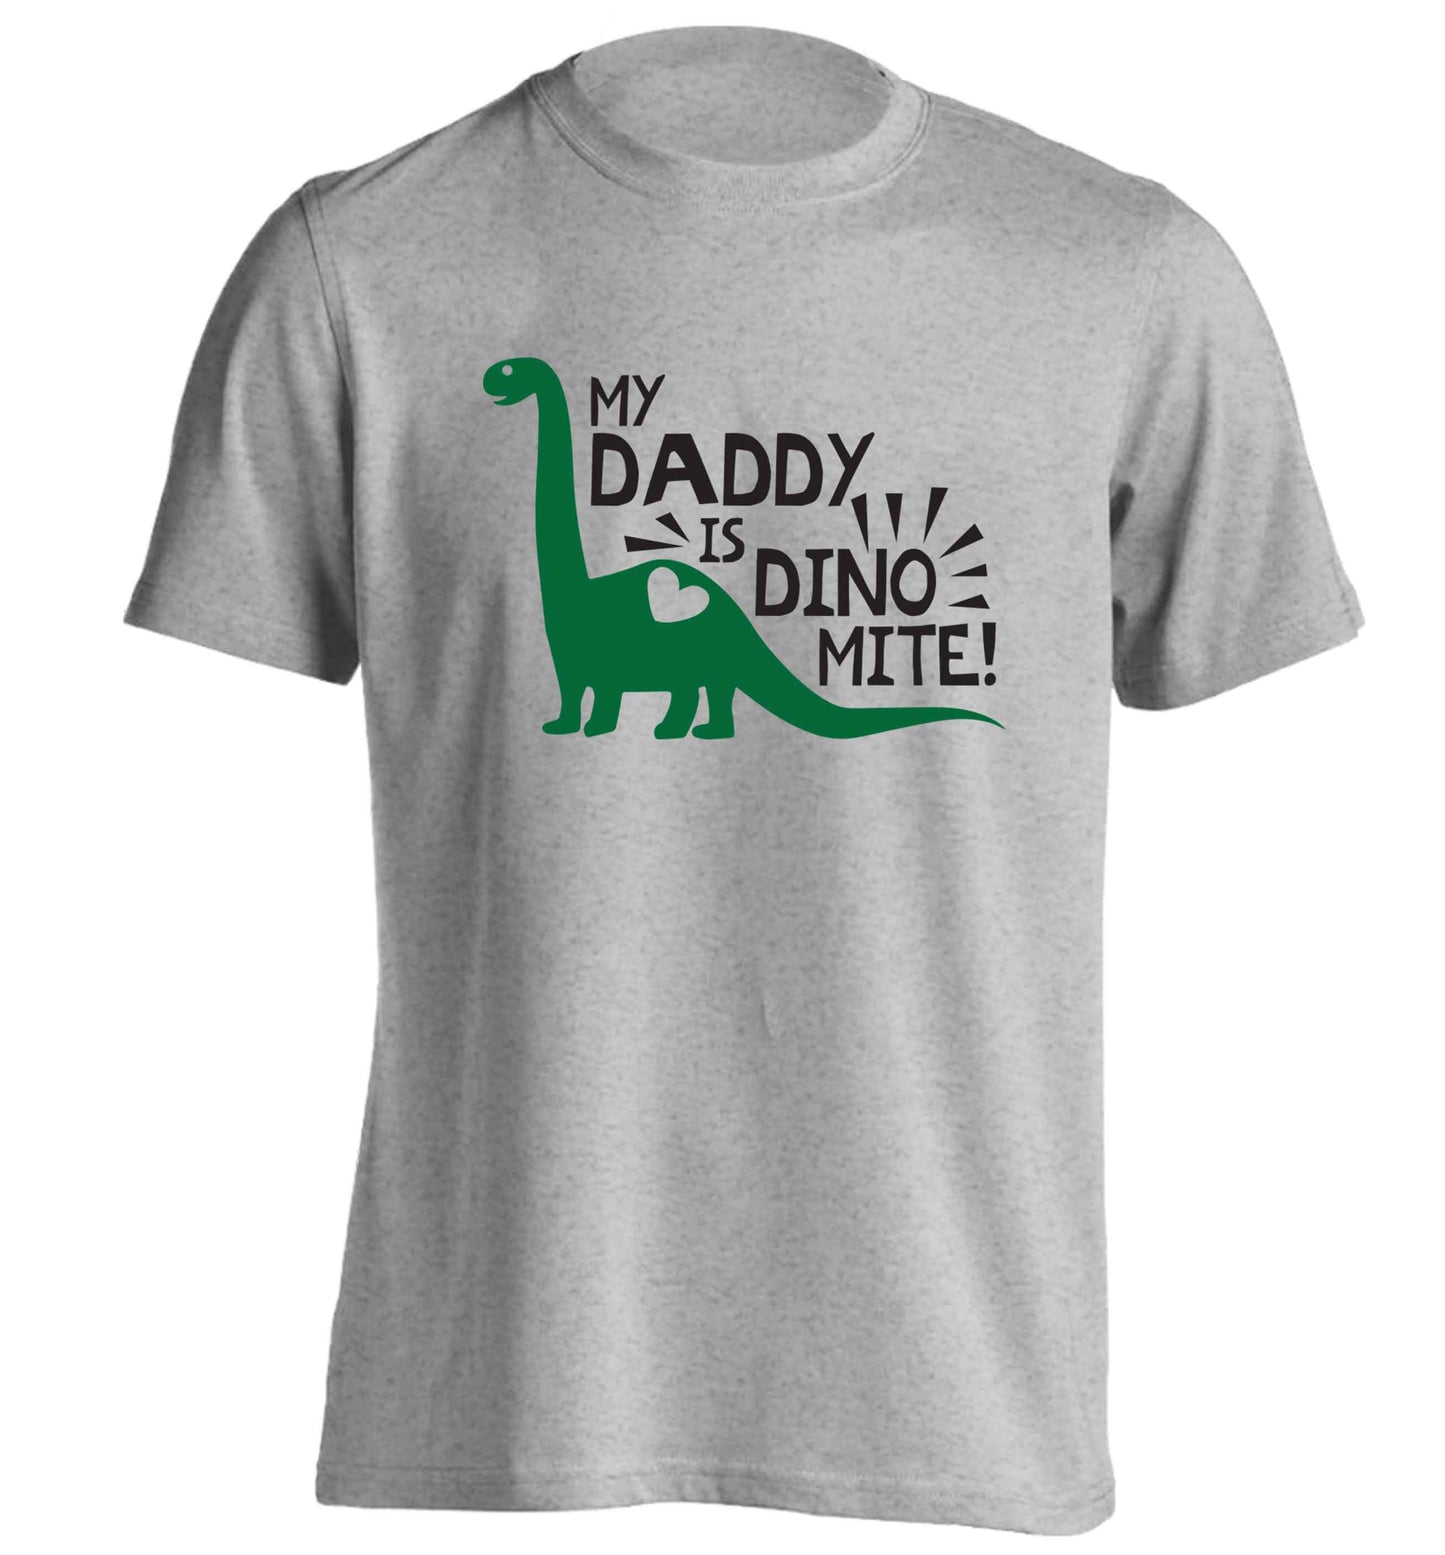 My daddy is dinomite! adults unisex grey Tshirt 2XL